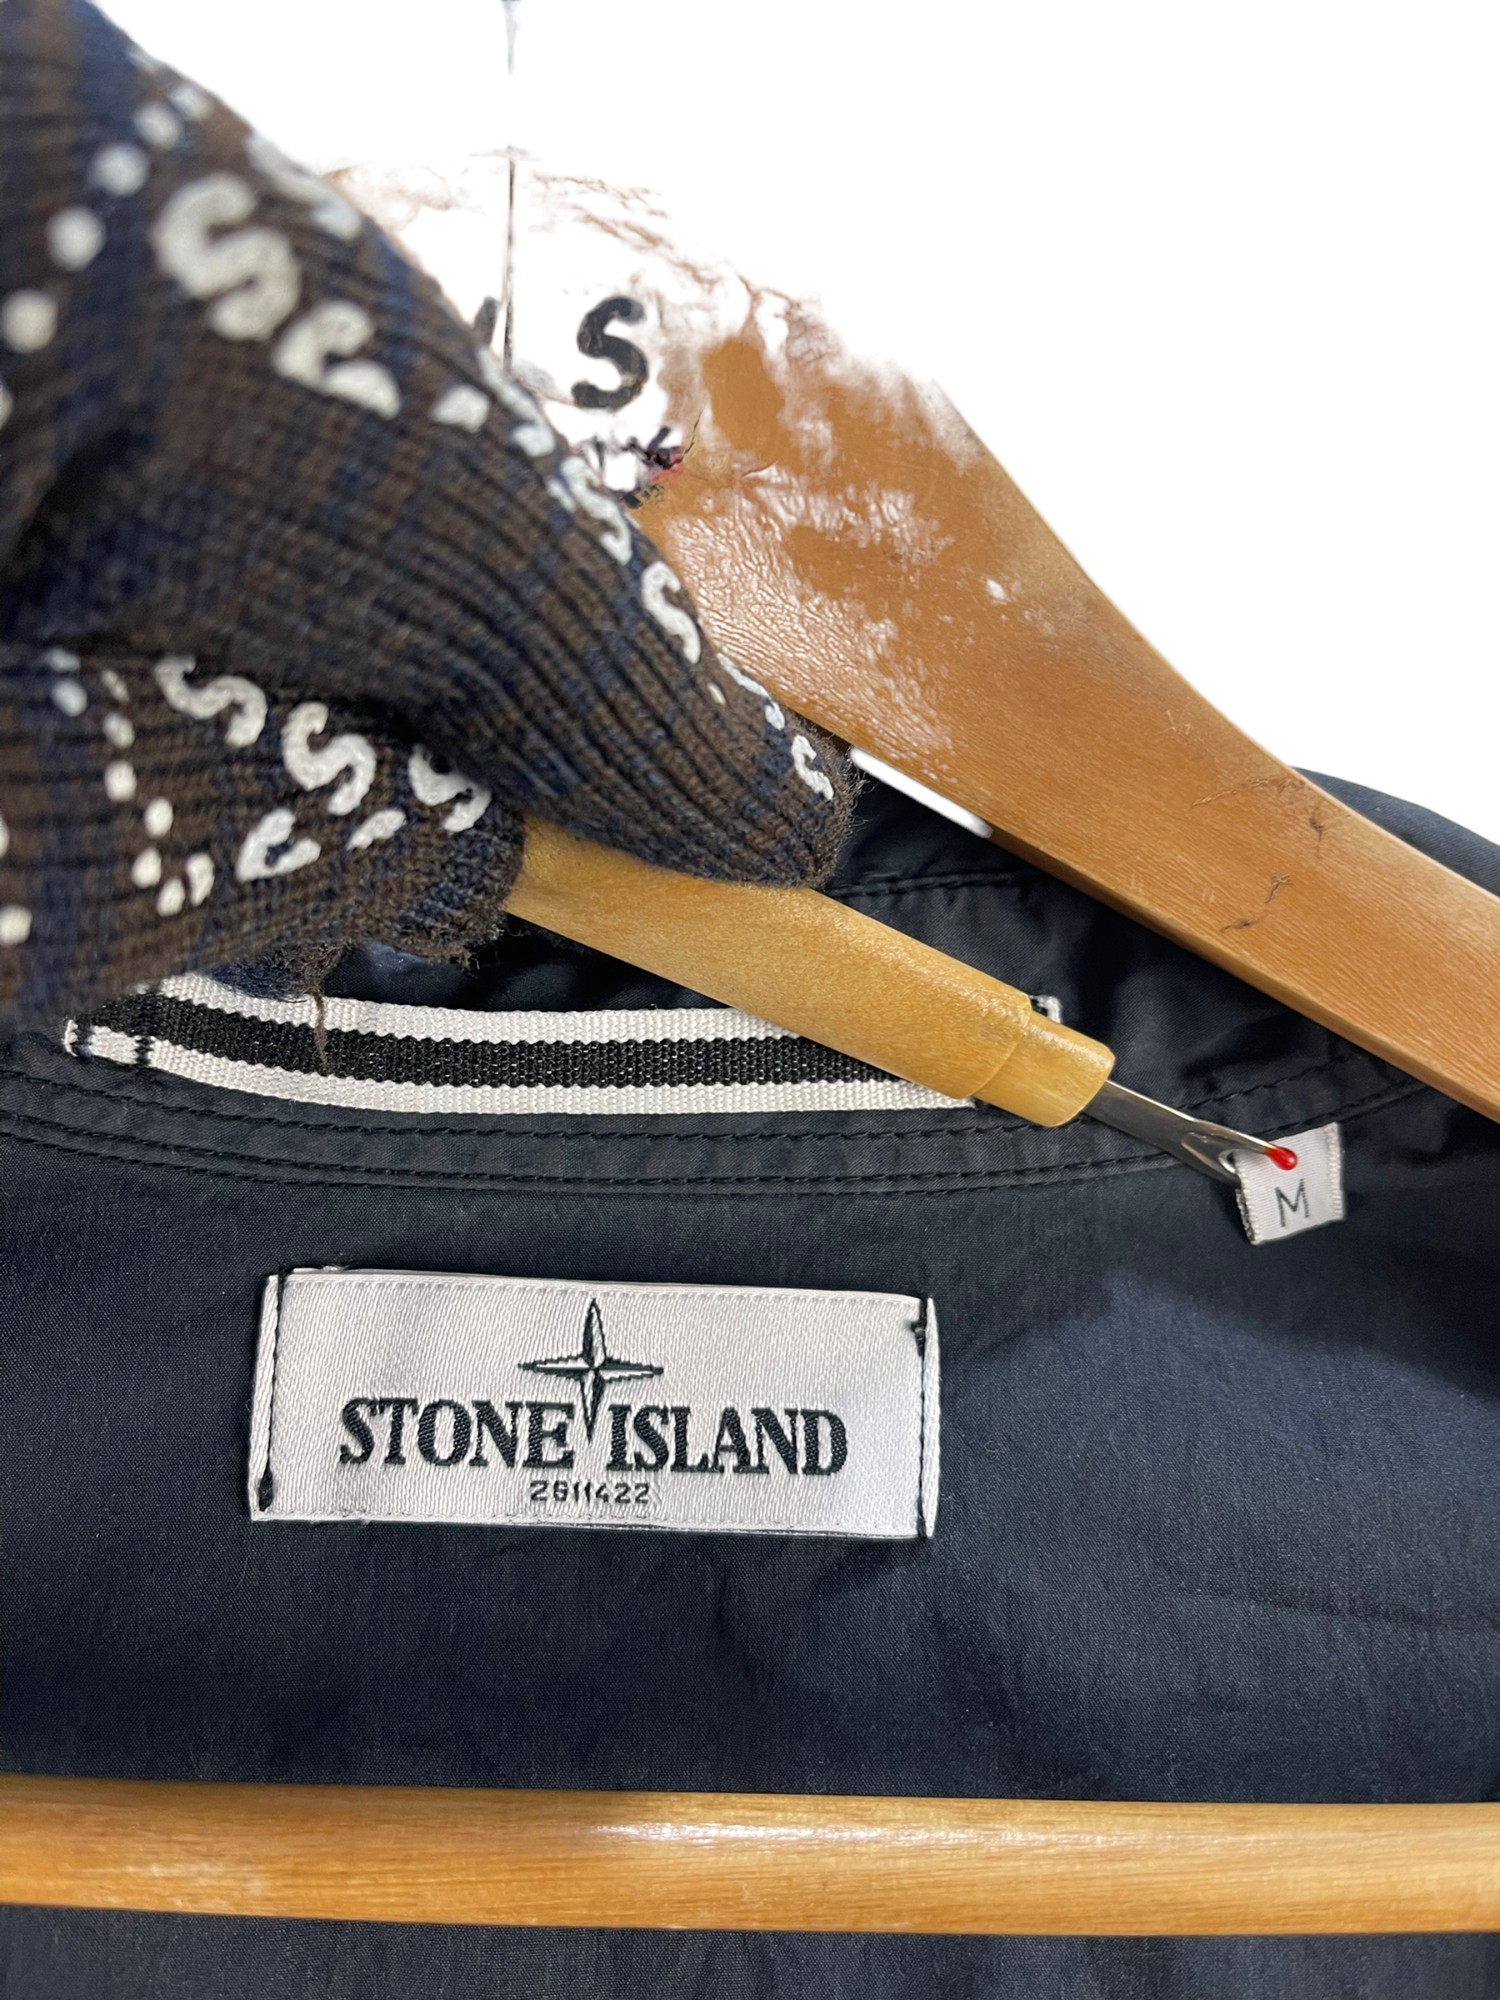 Stone Island Jacket - 6